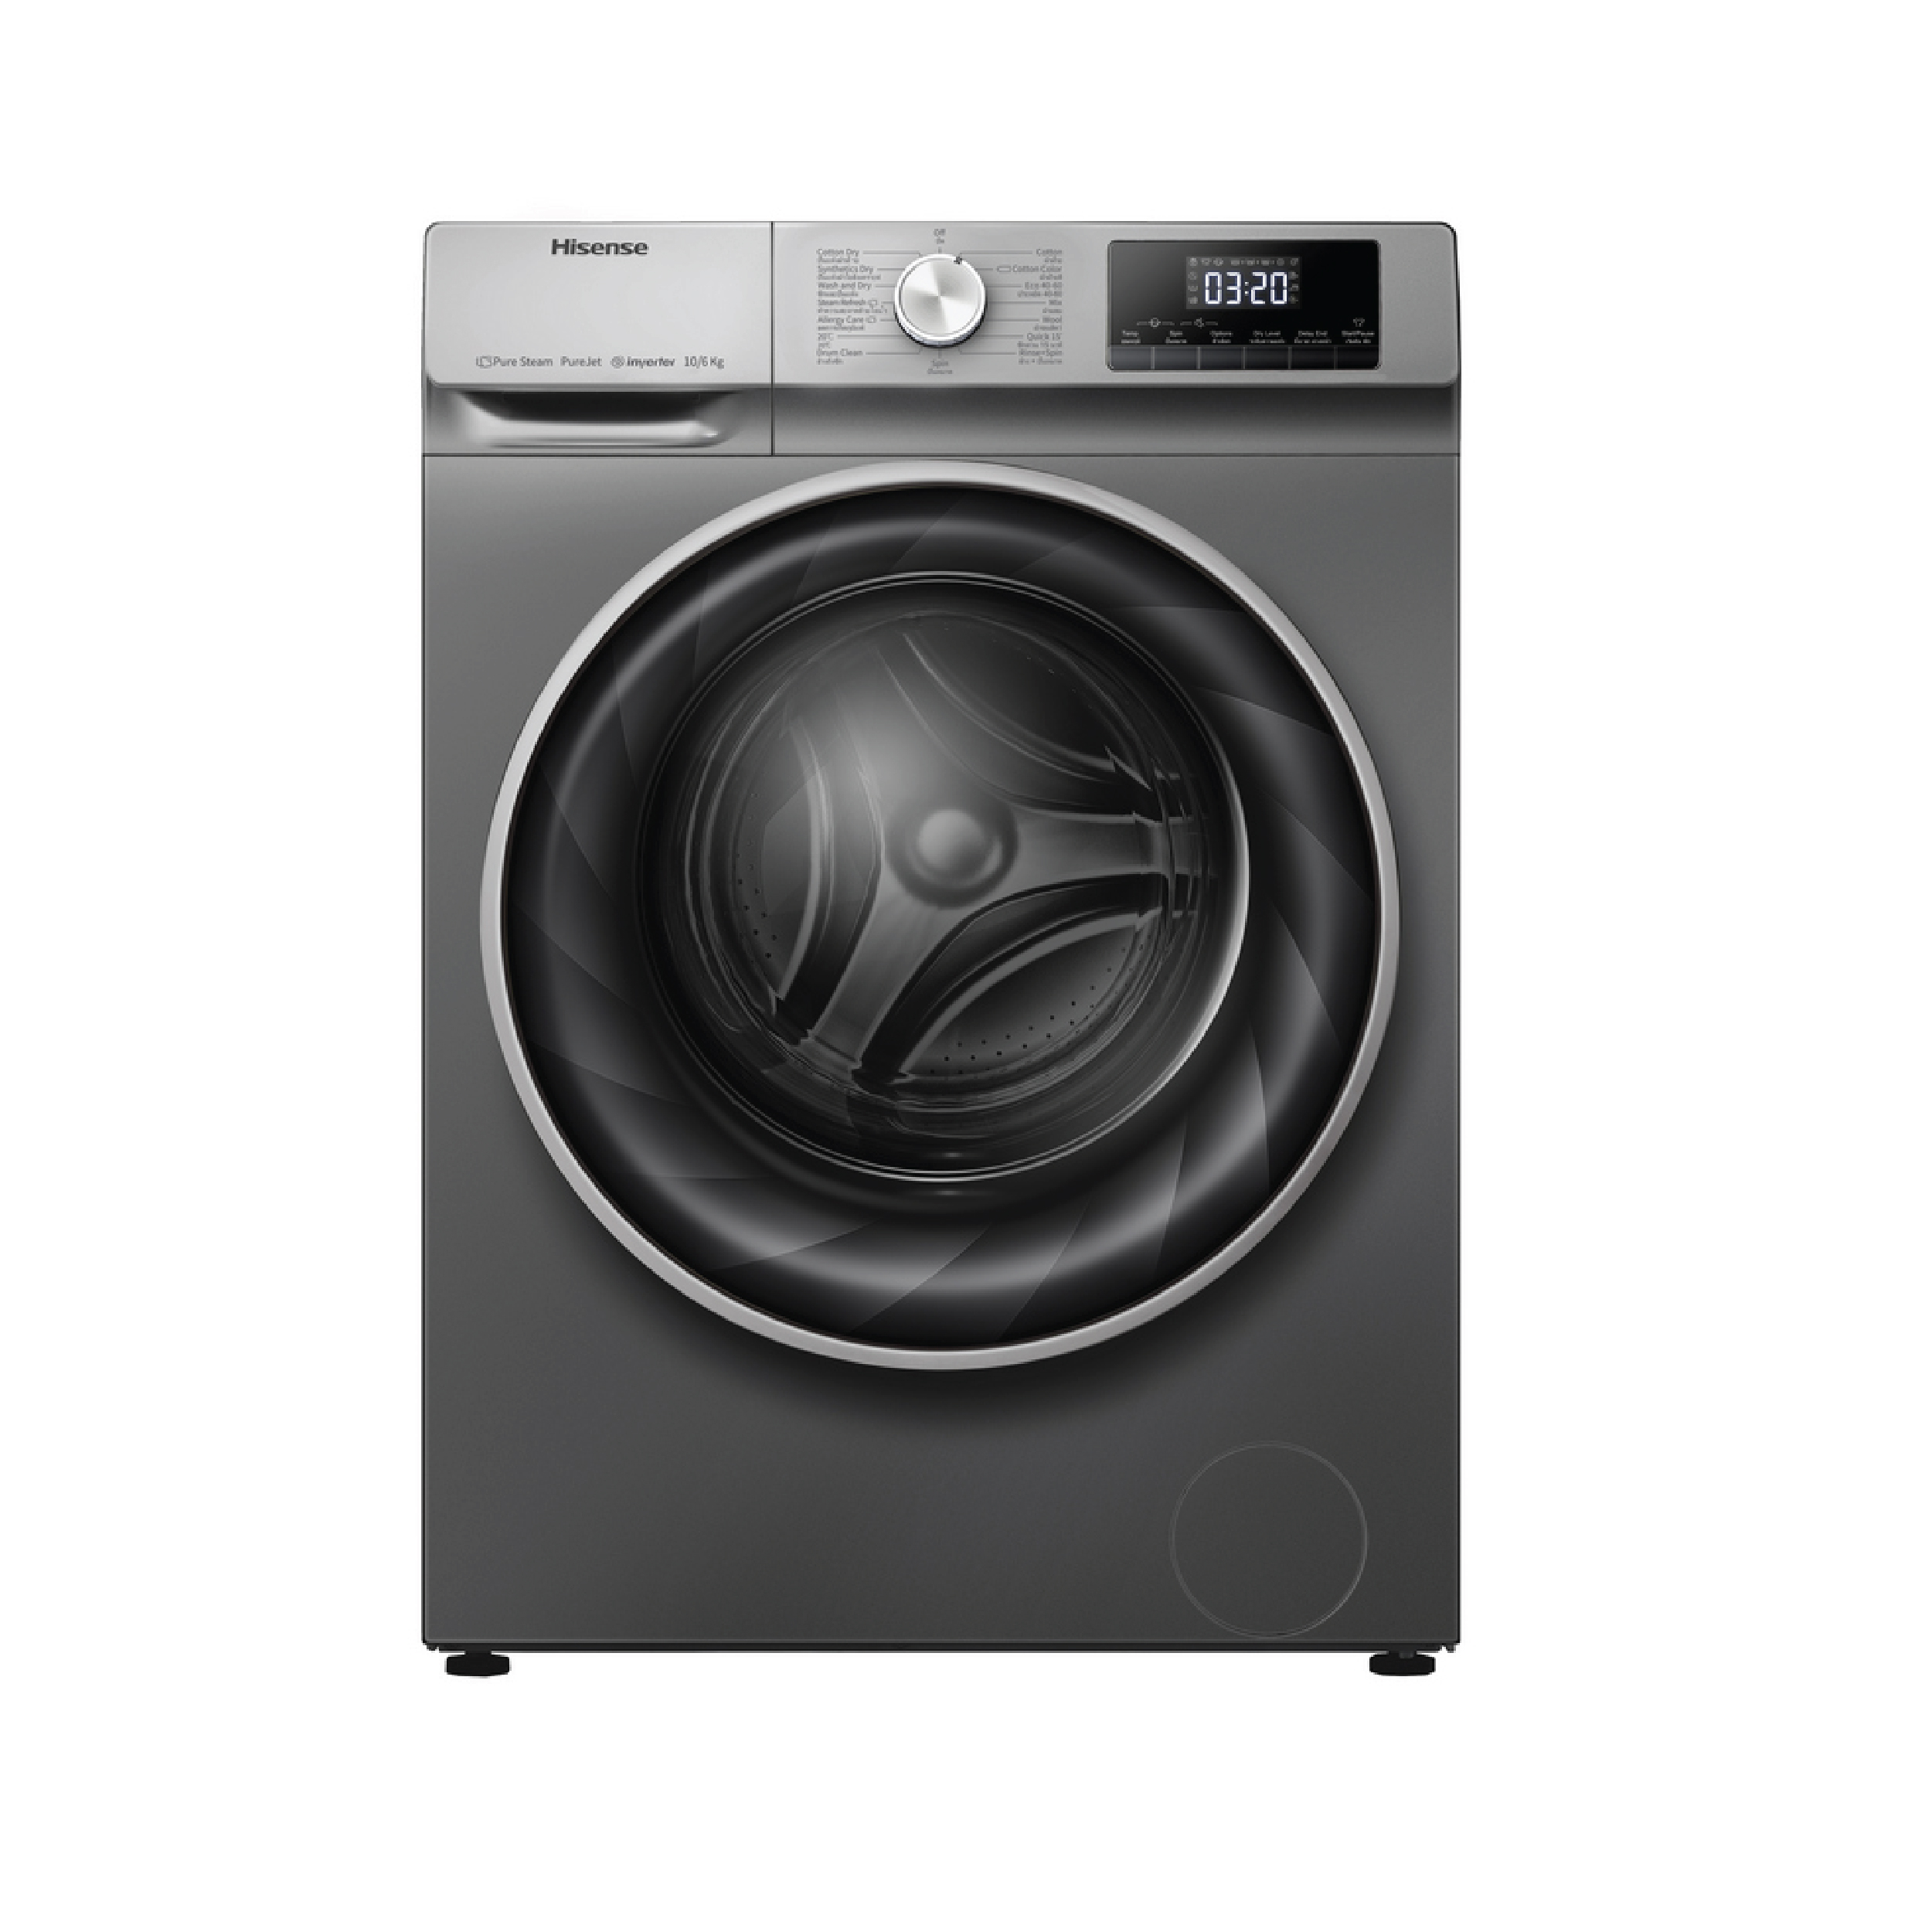 แนะนำเครื่องซักผ้าพร้อมอบผ้าในอย่าง Hisense รุ่น WDQY1014EVJMT